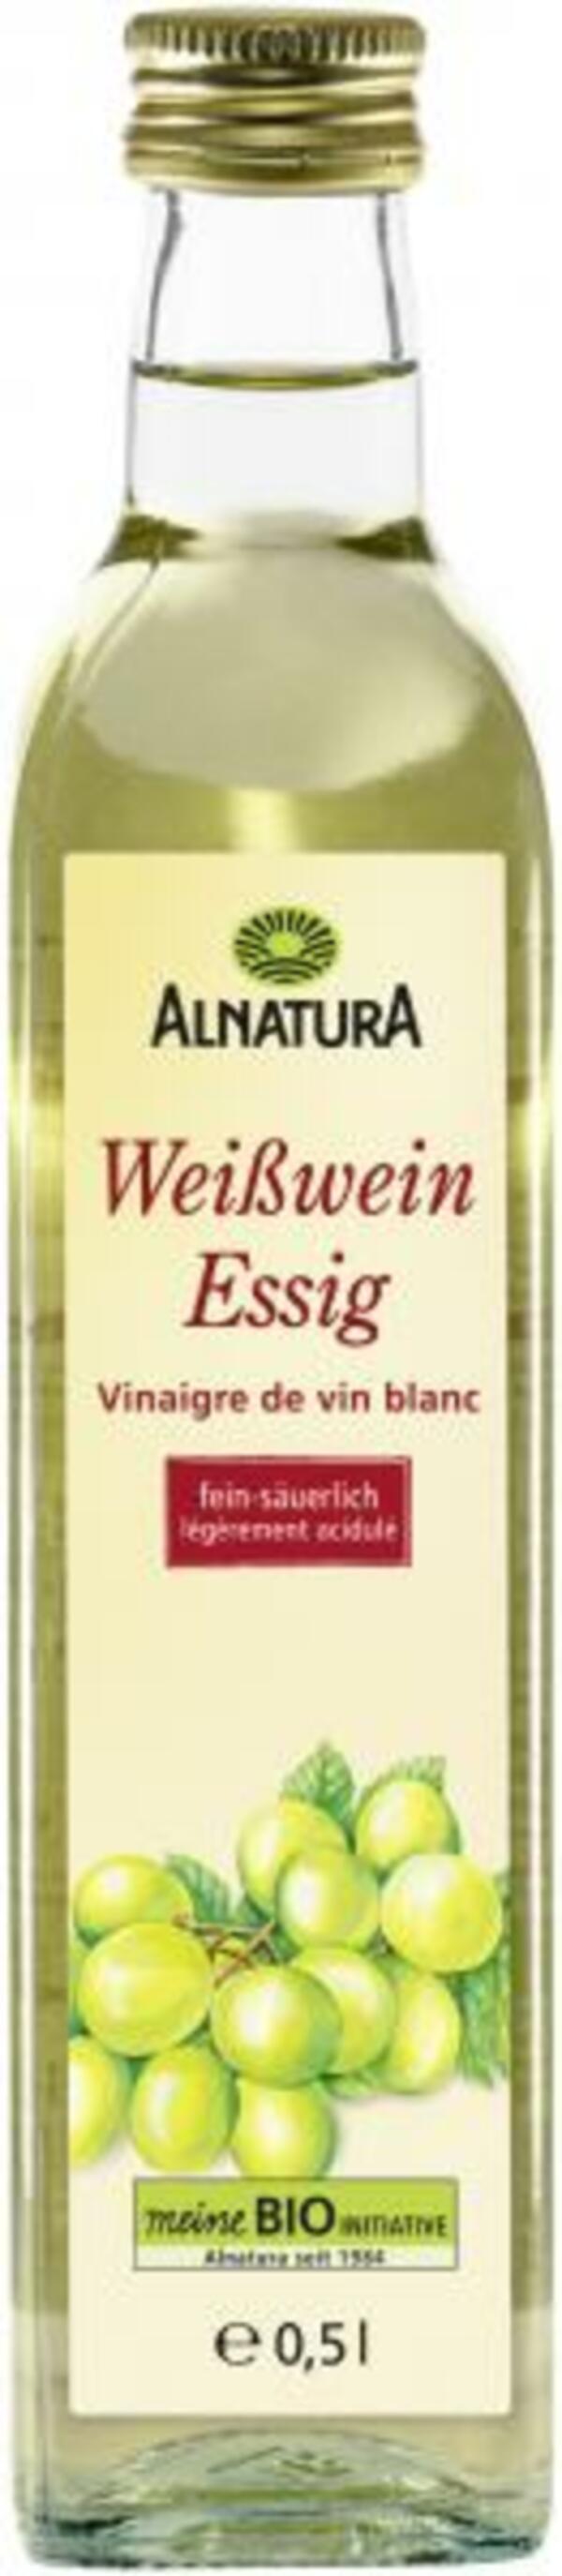 Bild 1 von Alnatura Weißweinessig